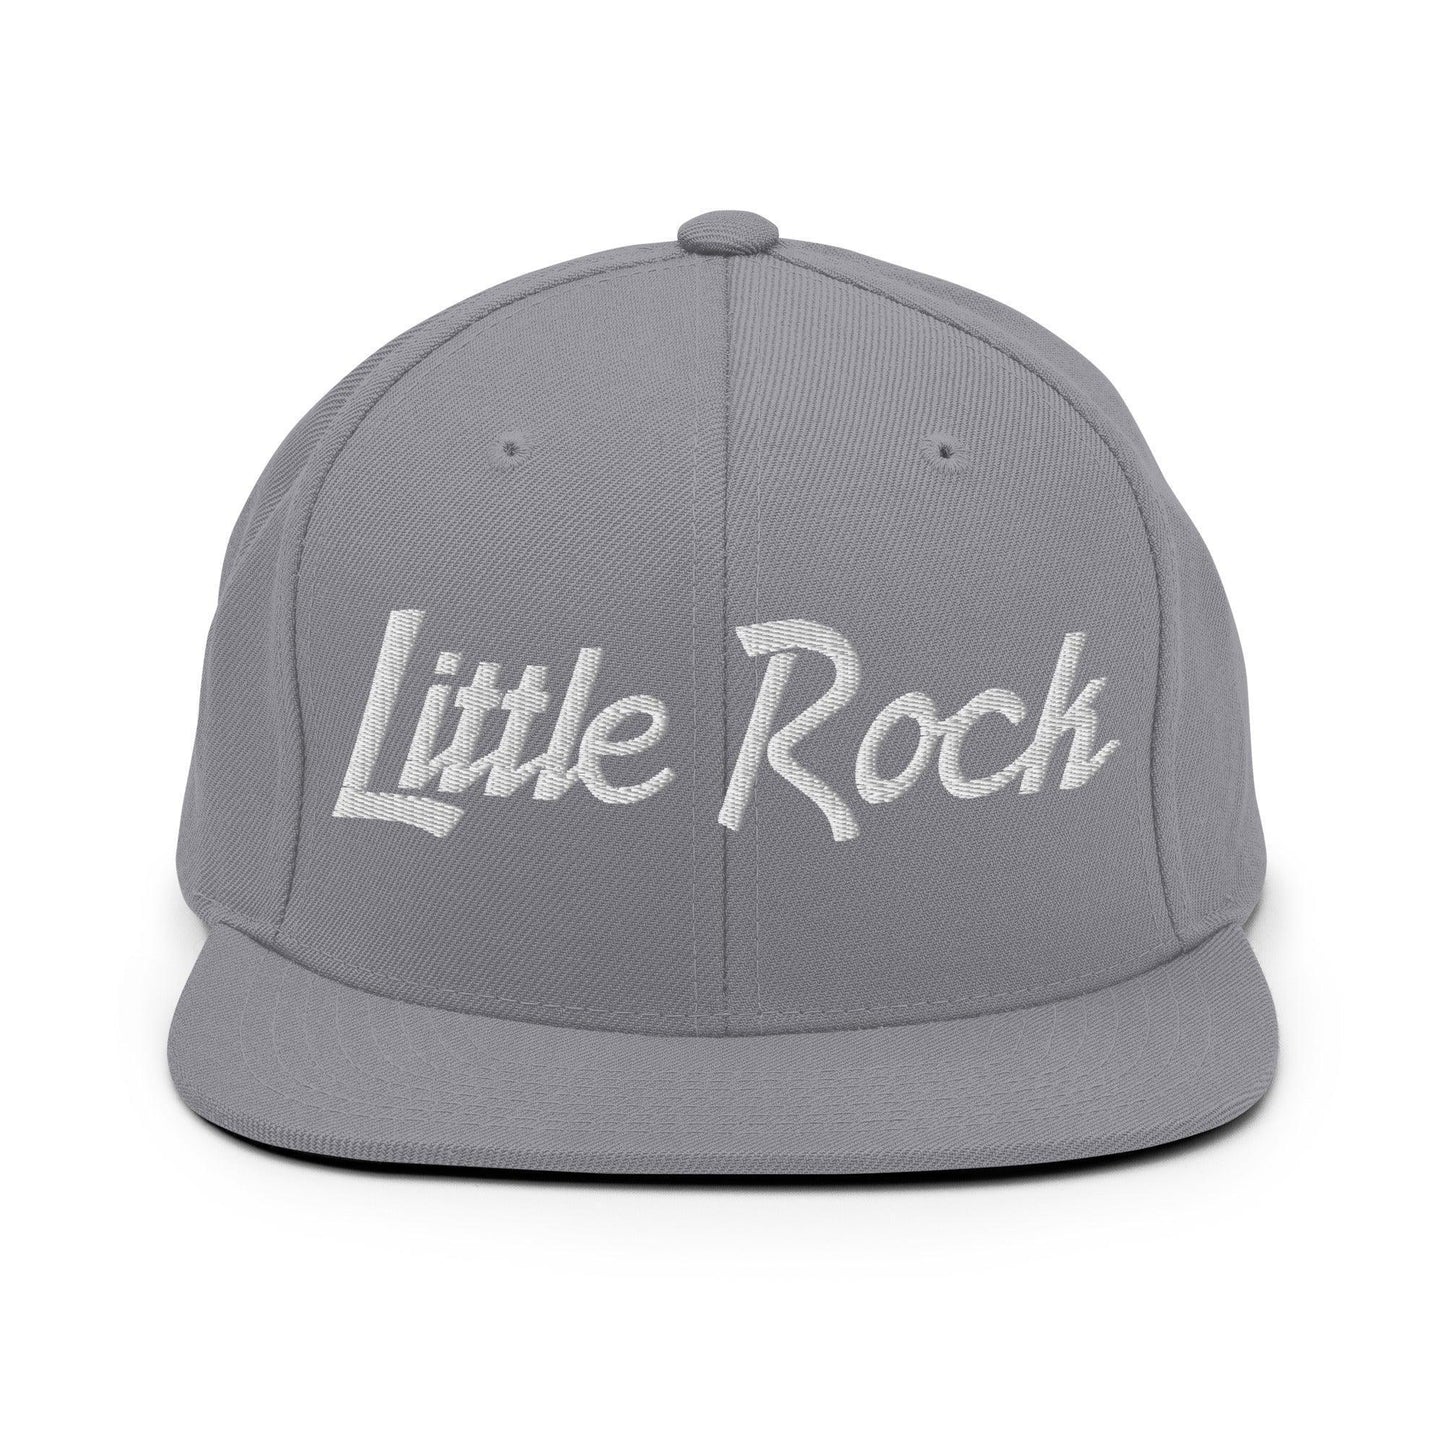 Little Rock Script Snapback Hat Silver